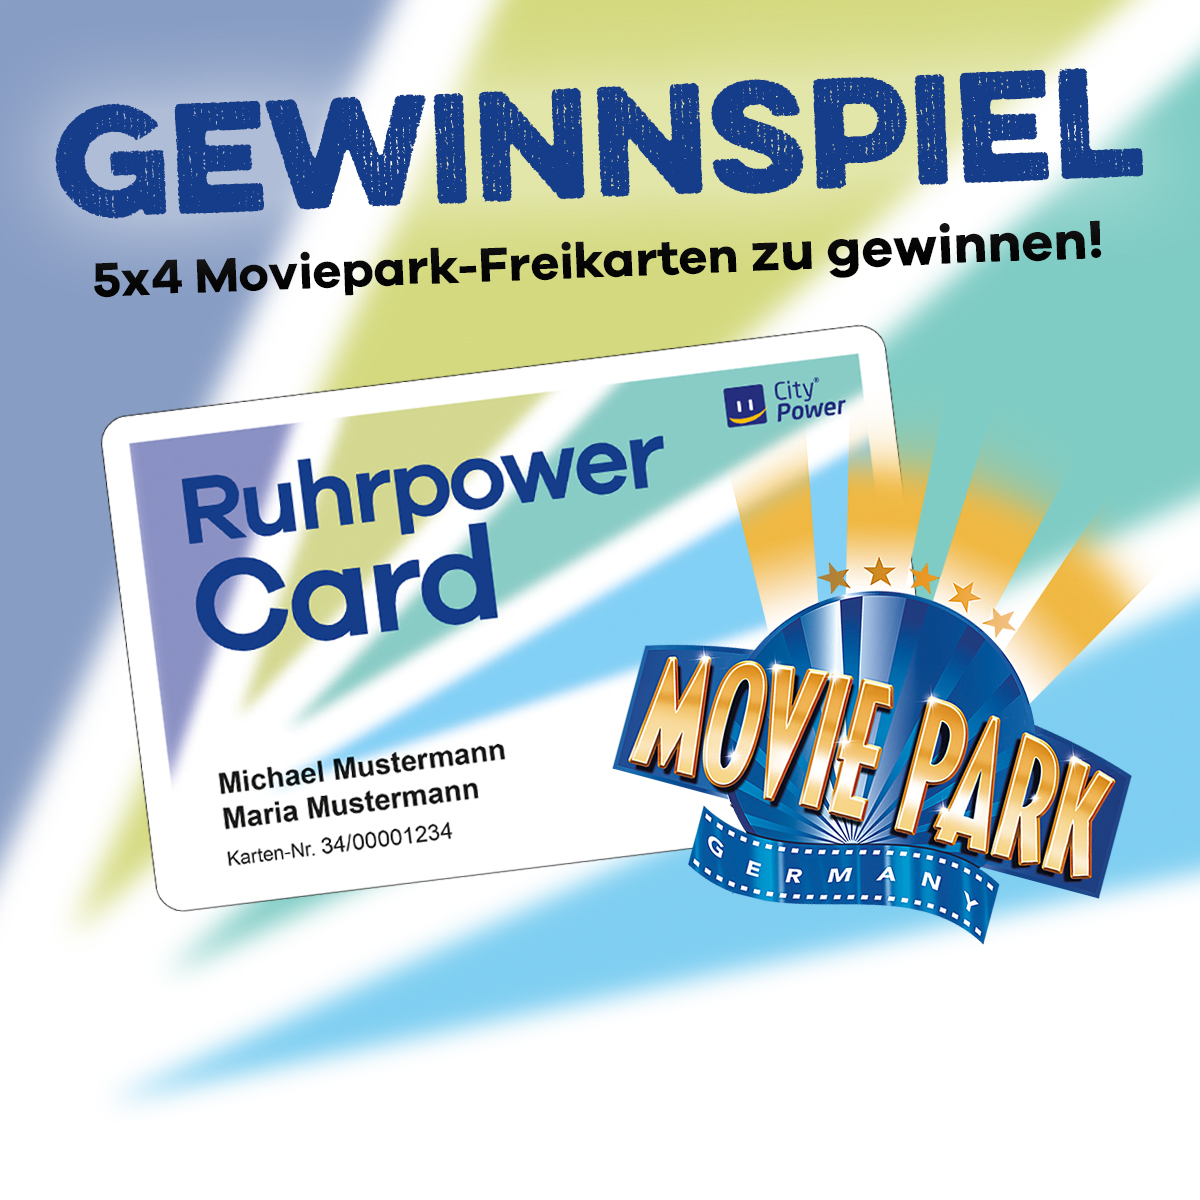 Auf dieser Grafik ist die RuhrpowerCard abgebildet und das Wort Gewinnspiel sowie das Logo vom Movie Park